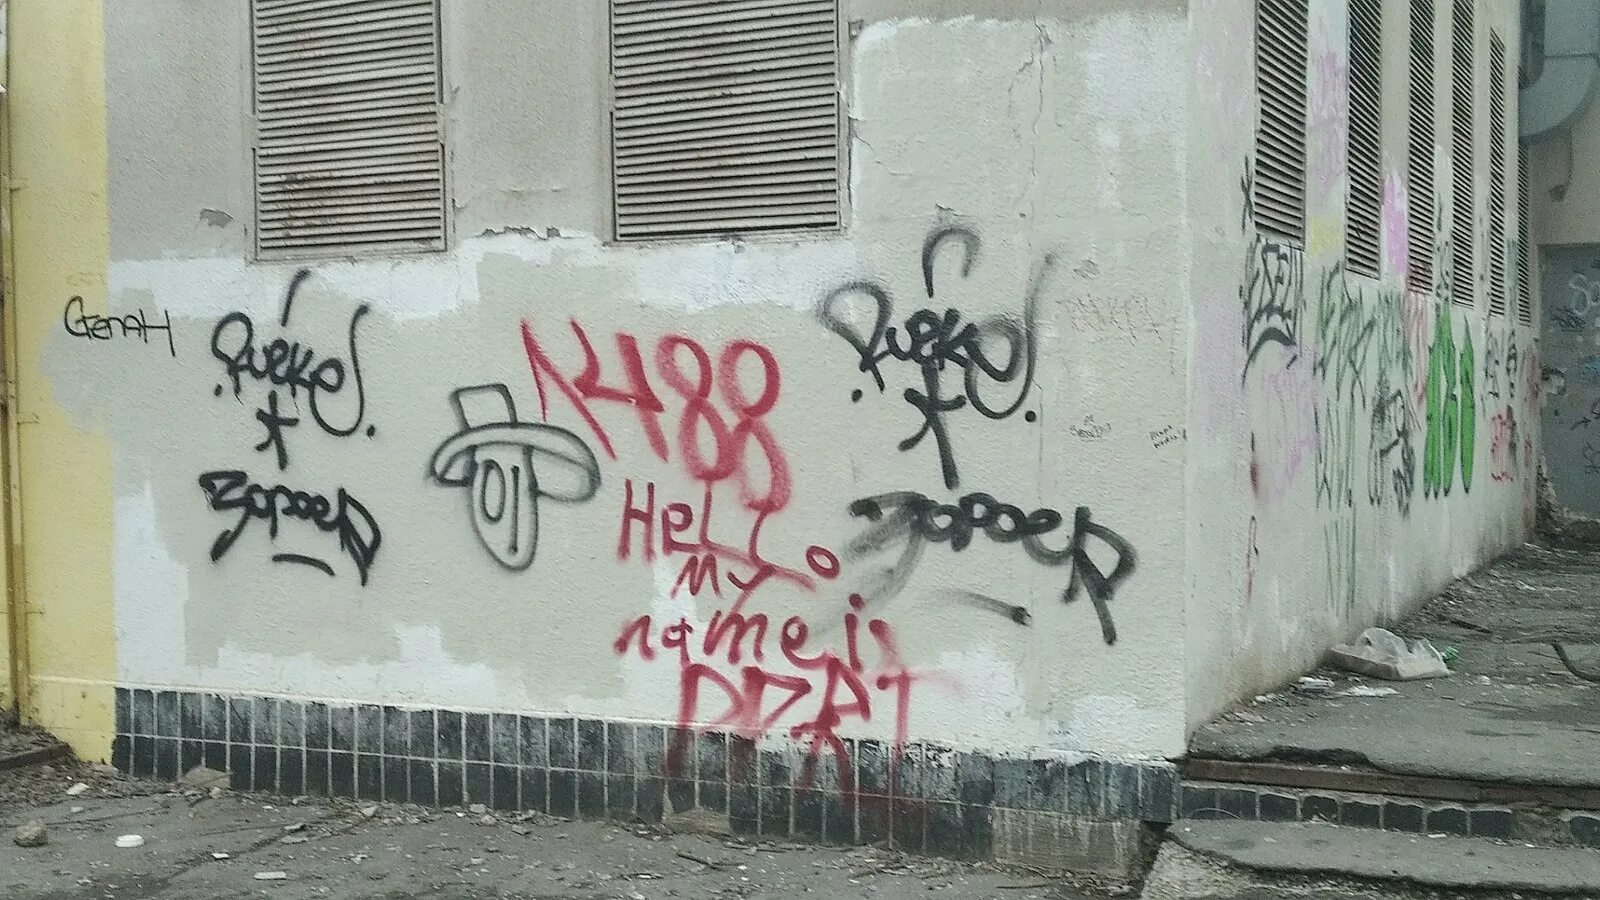 Лозунг 14 88. 1488 Граффити. Cursed граффити. 1488 На стене. Граффити националистов.